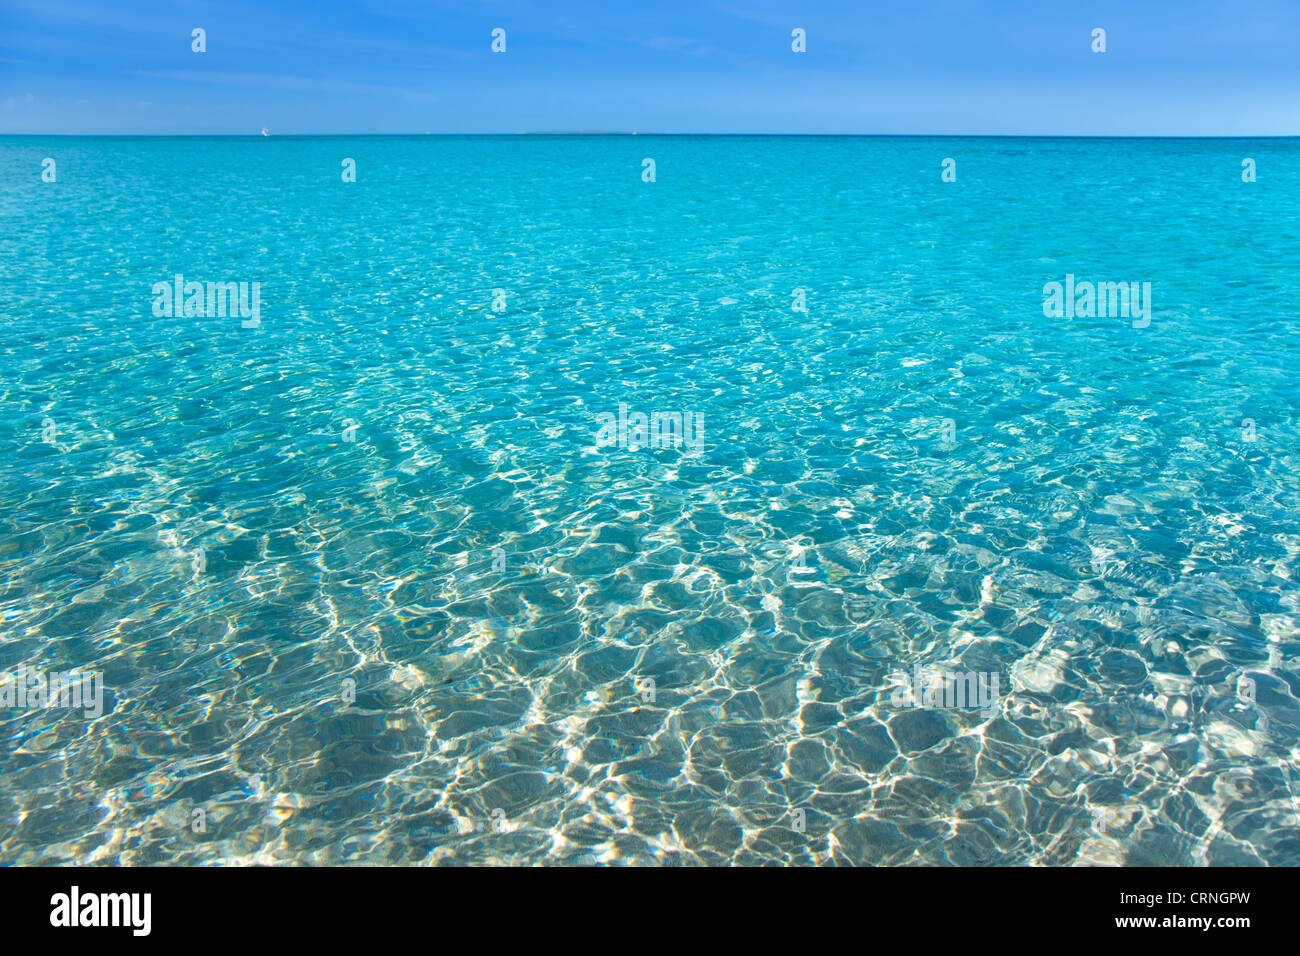 Tropical de Plage avec sable blanc et eau turquoise sous ciel bleu Banque D'Images